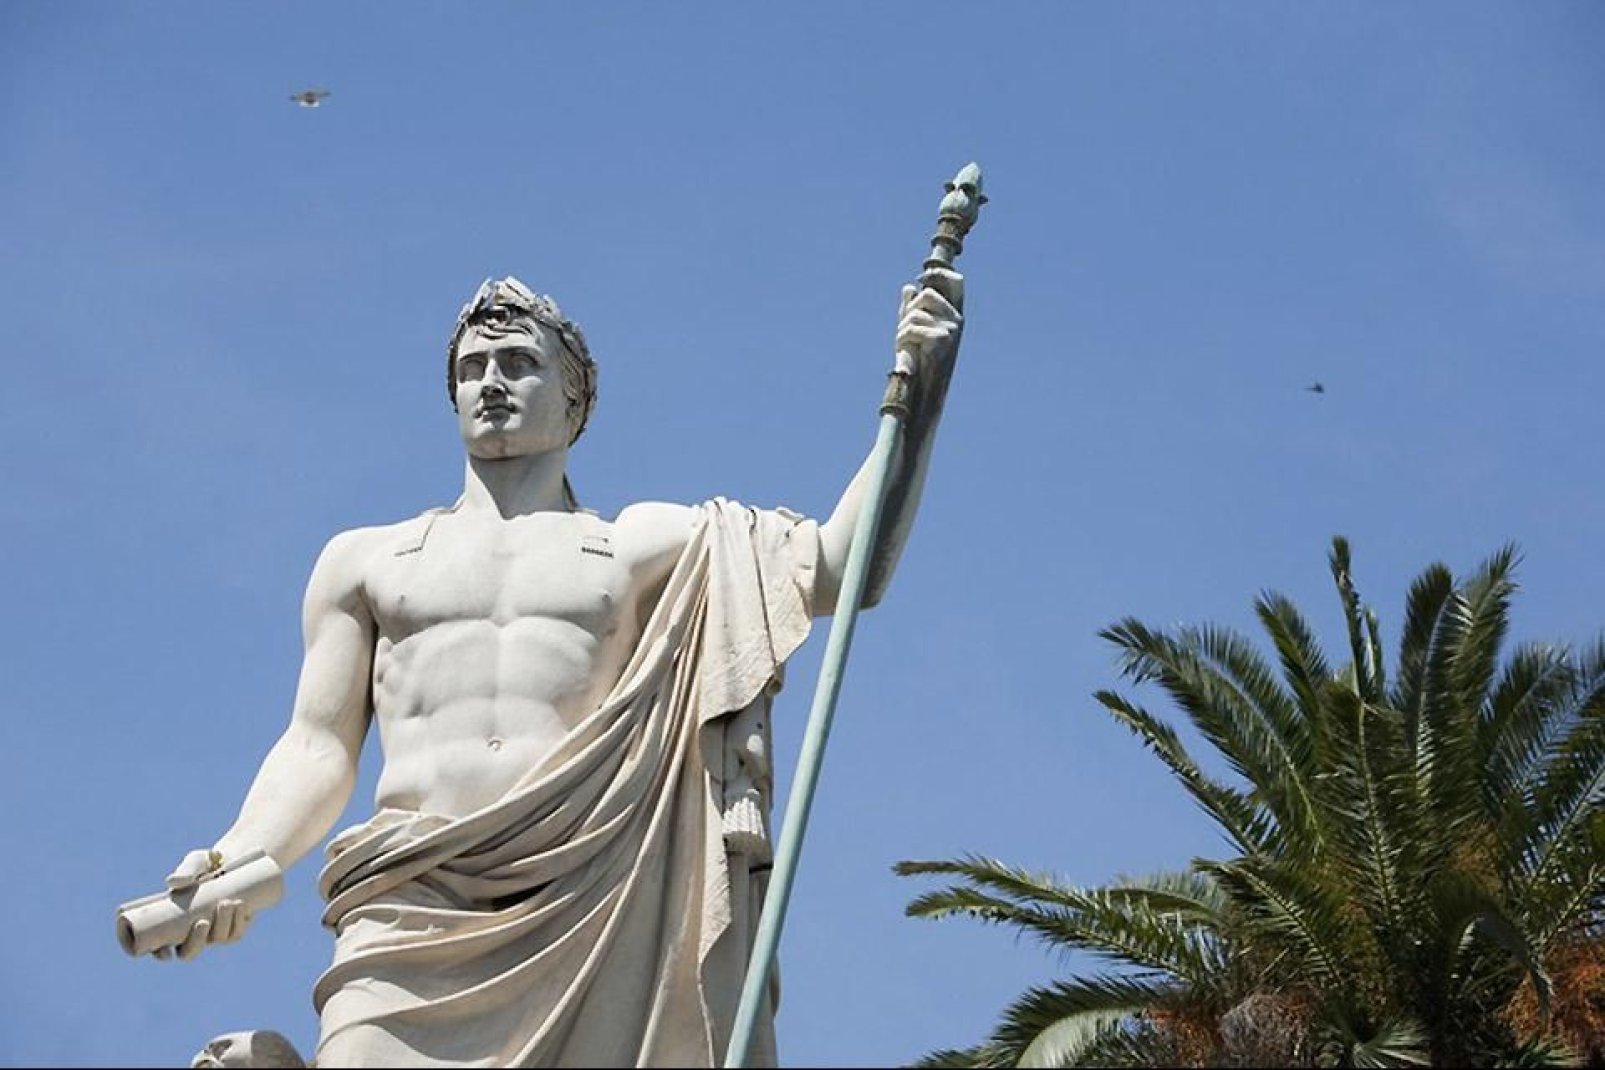 Questa statua situata in piazza San Nicola è un'opera di Bartolini, in memoria dell'illustre corso.